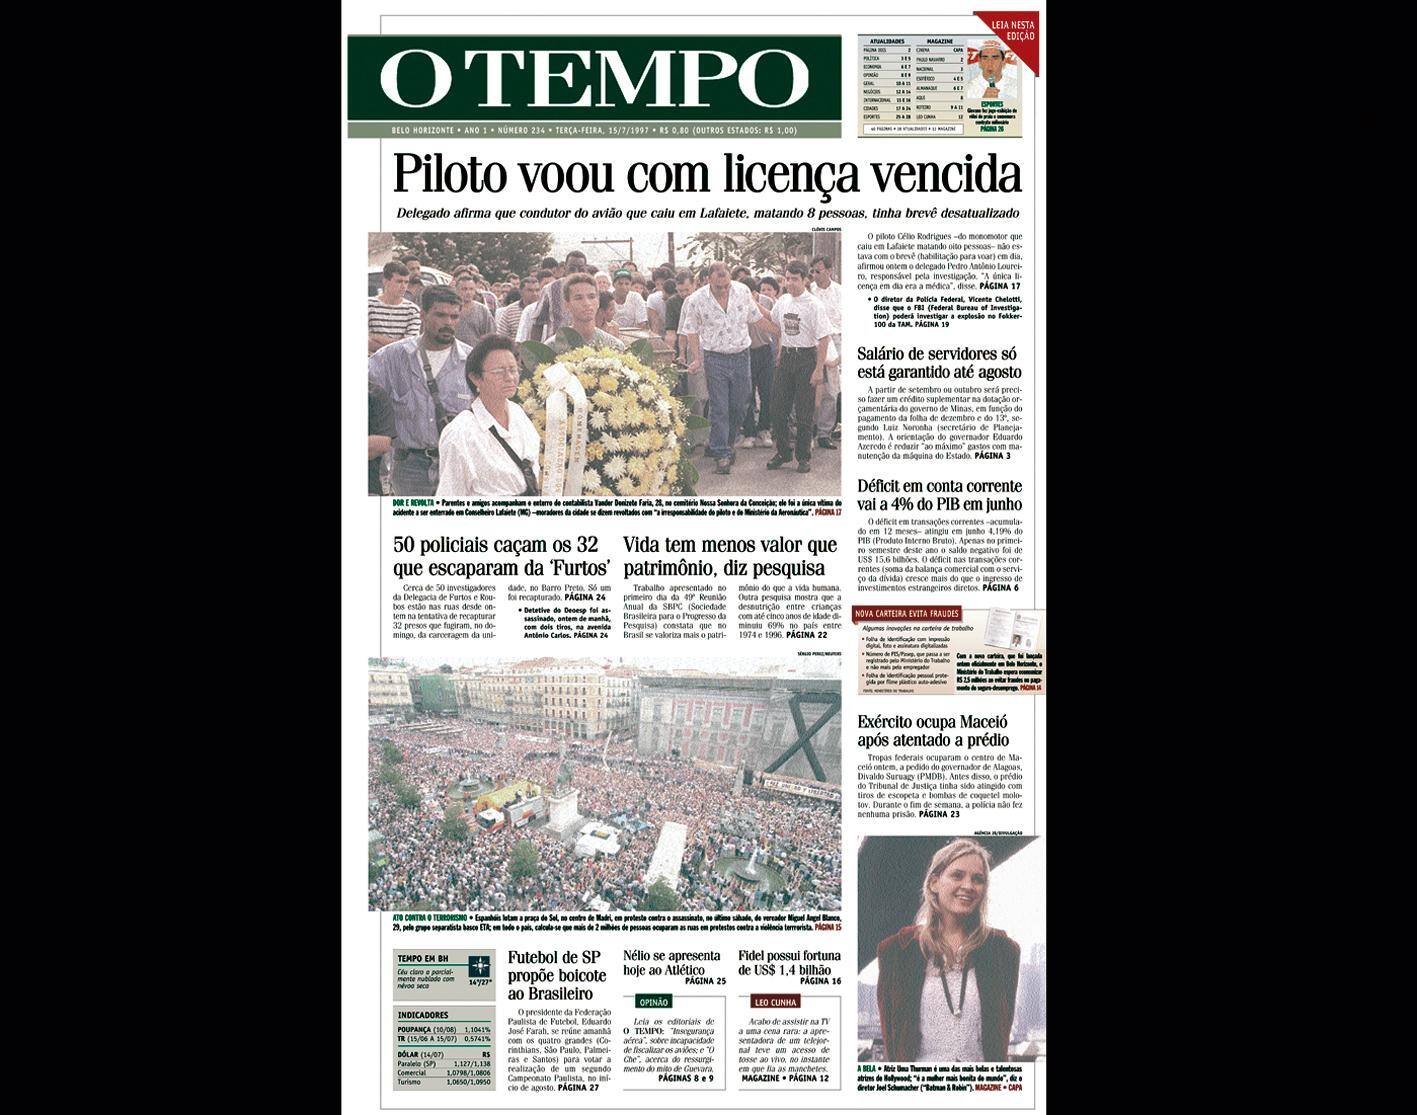 Capa do jornal O TEMPO no dia 15.7.1997; resgate do acervo marca as comemorações dos 25 anos da publicação